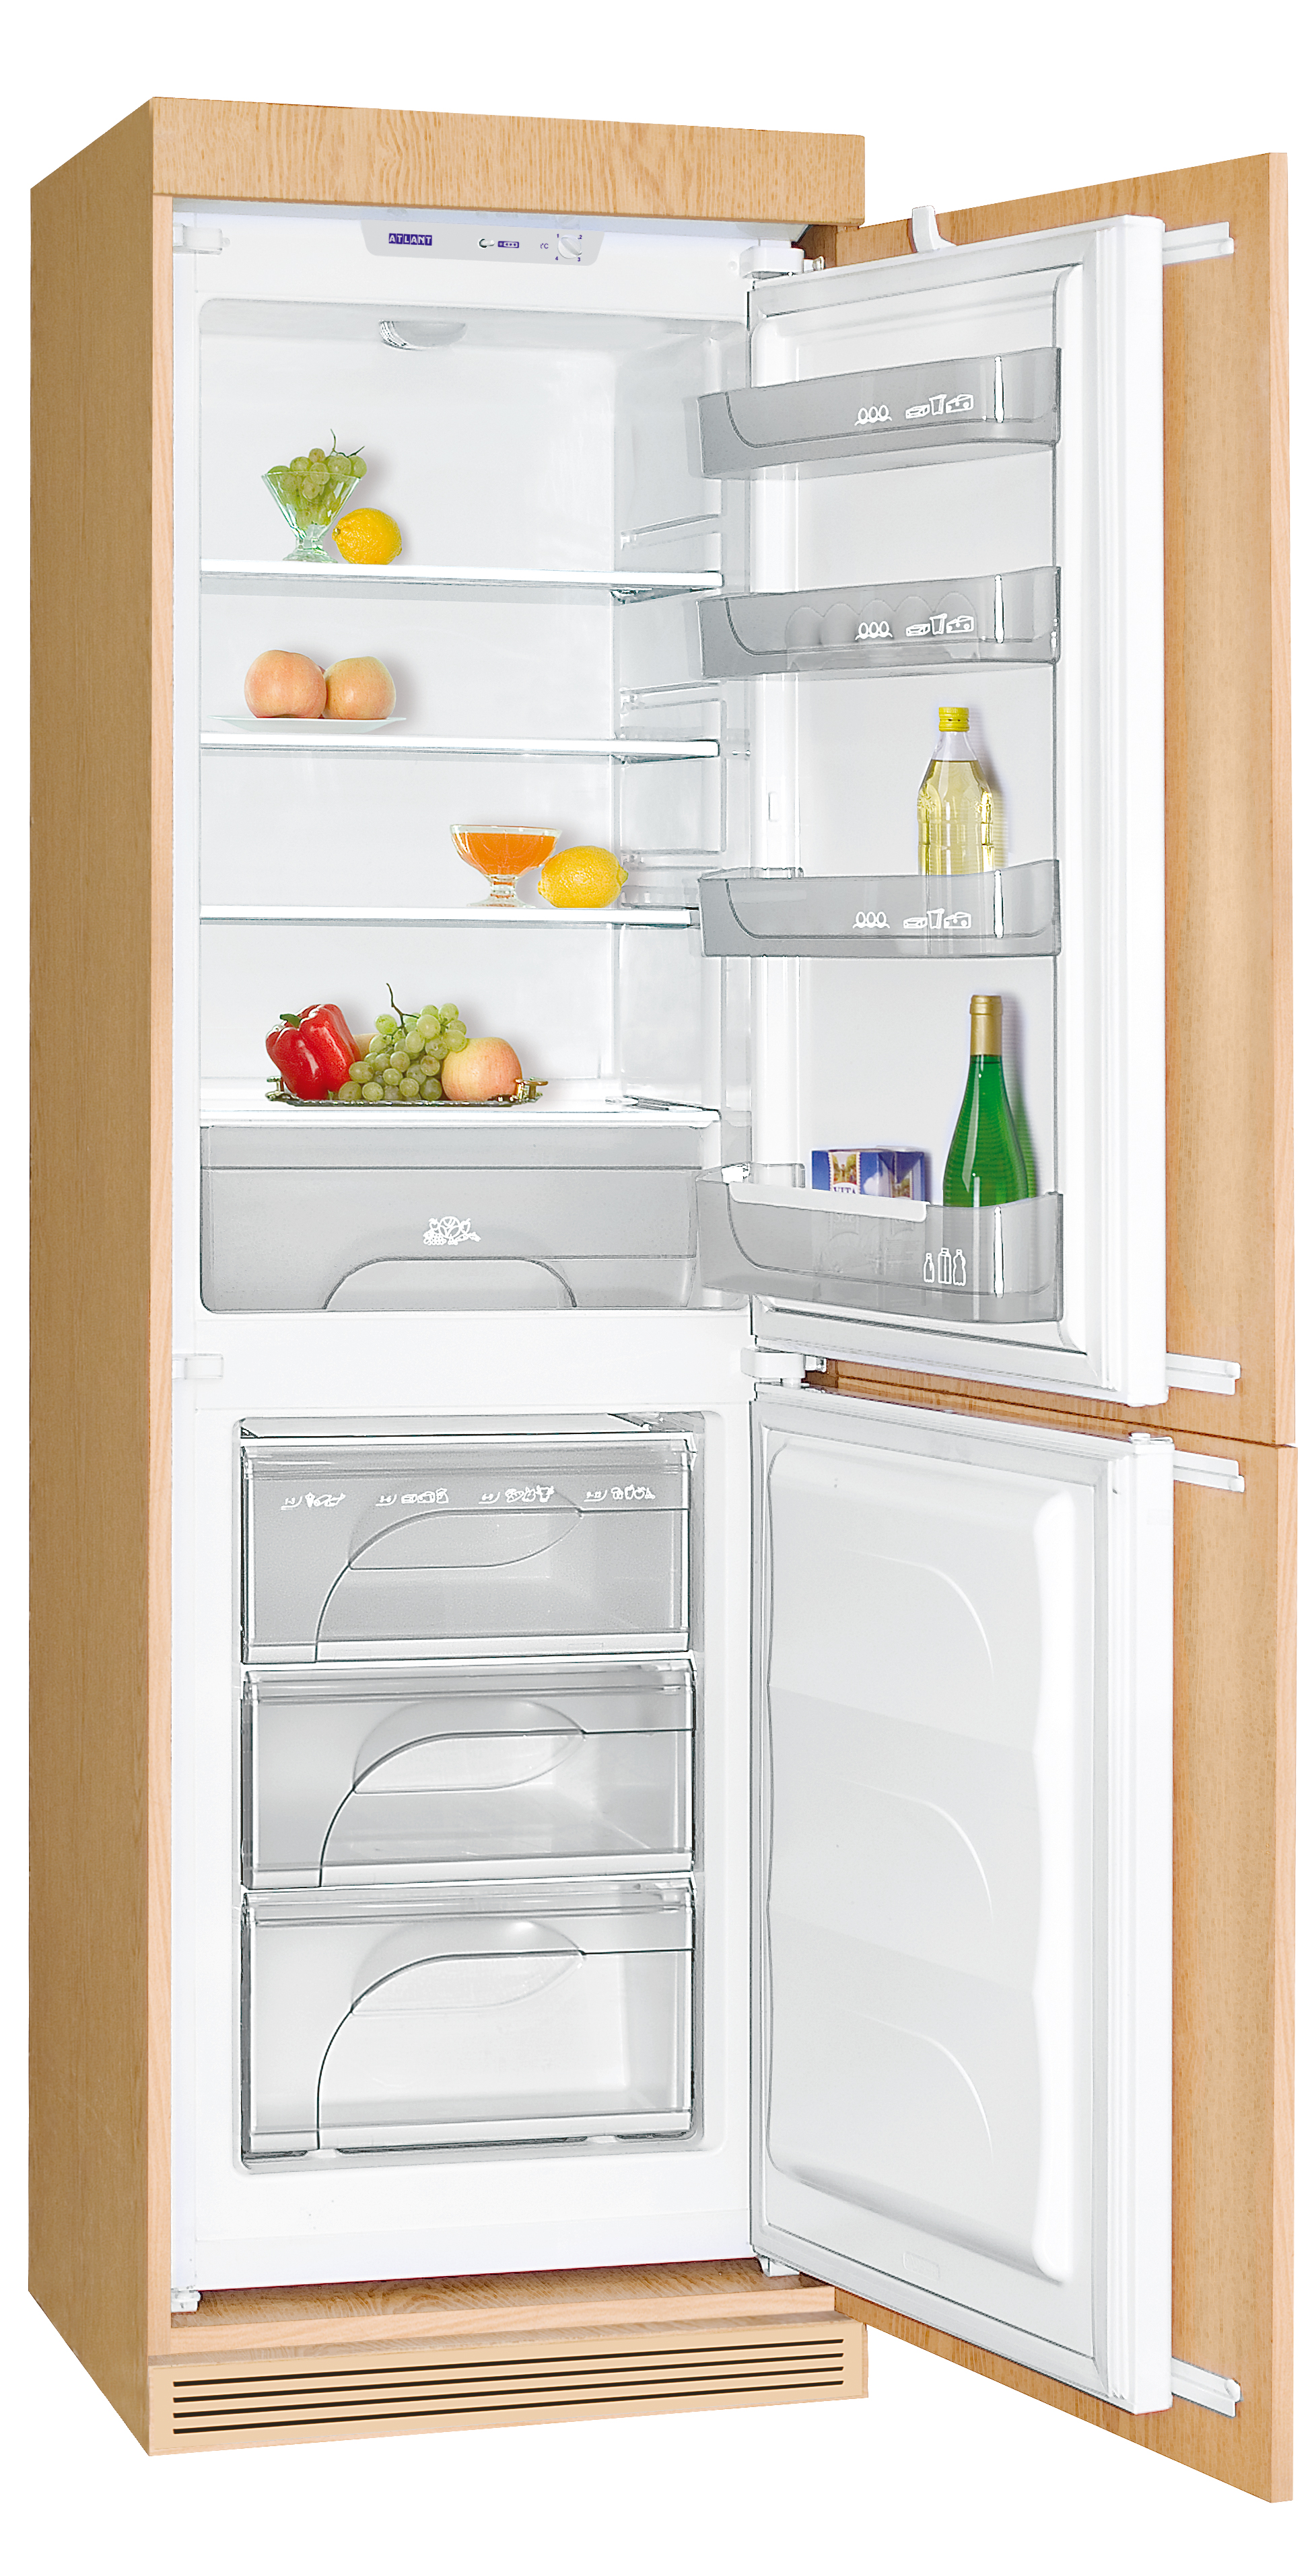 Какой атлант купить. Встраиваемый холодильник ATLANT 4307-000. Холодильник Атлант хм 4307-000. Встроенный холодильник Атлант хм 4307-000. Встраиваемый двухкамерный холодильник ATLANT хм 4307-000.